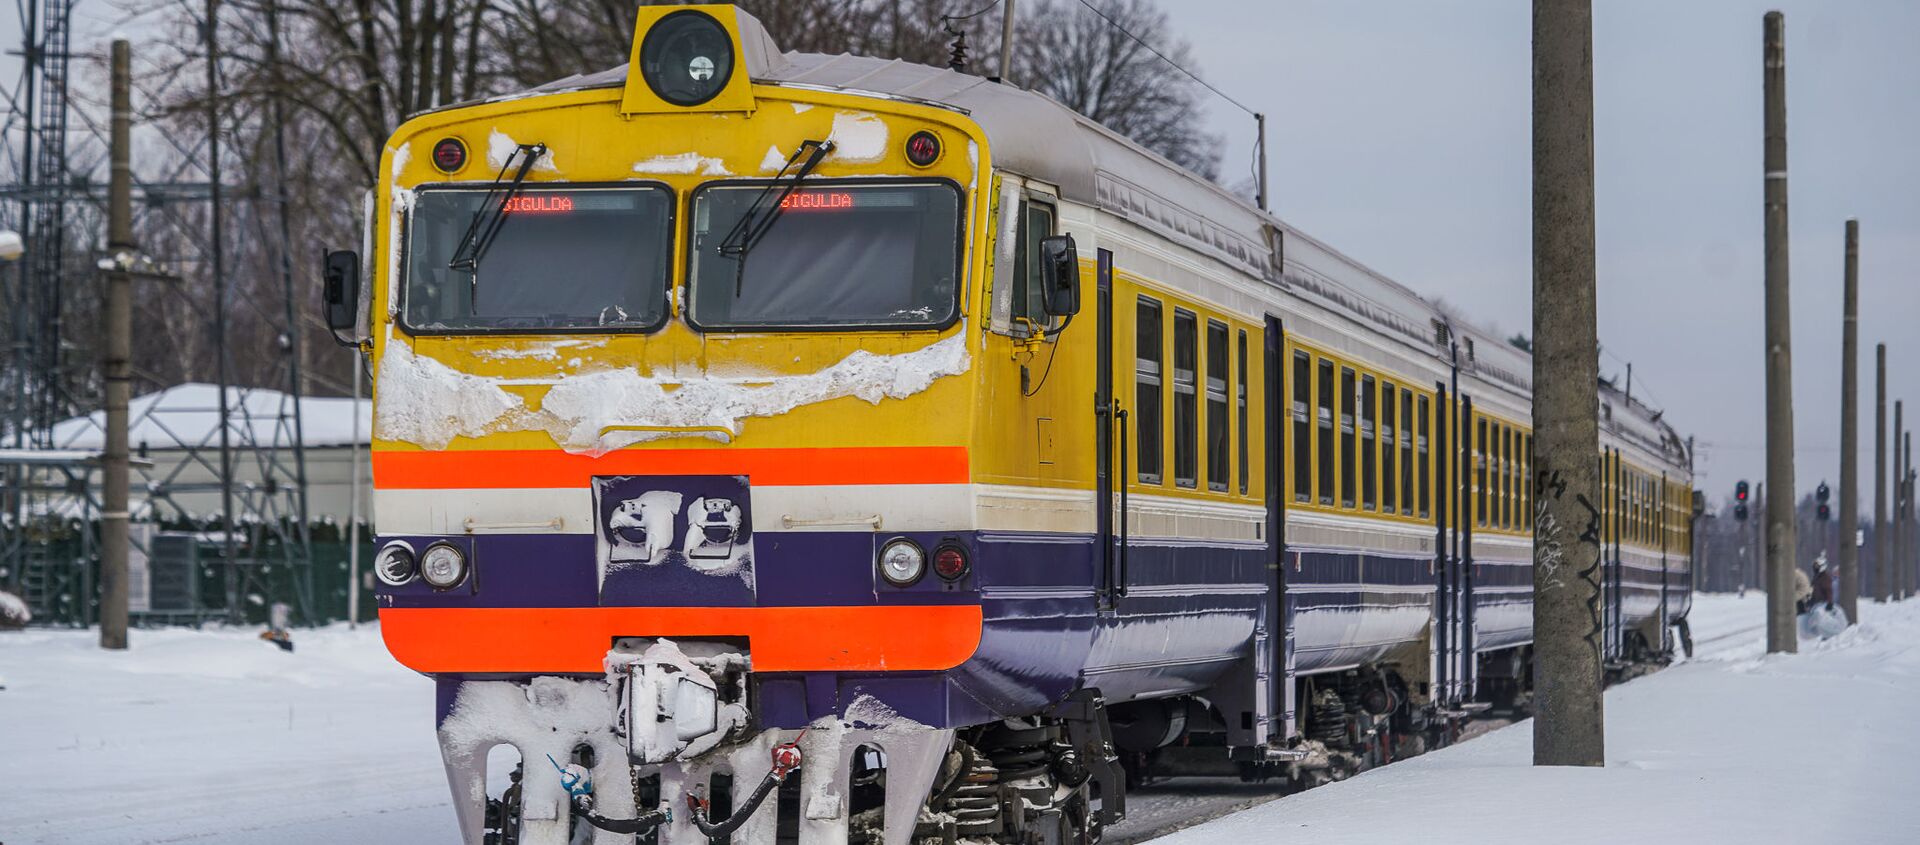 Дизельный поезд Рига-Сигулда Латвийской железной дороги - Sputnik Latvija, 1920, 19.02.2021